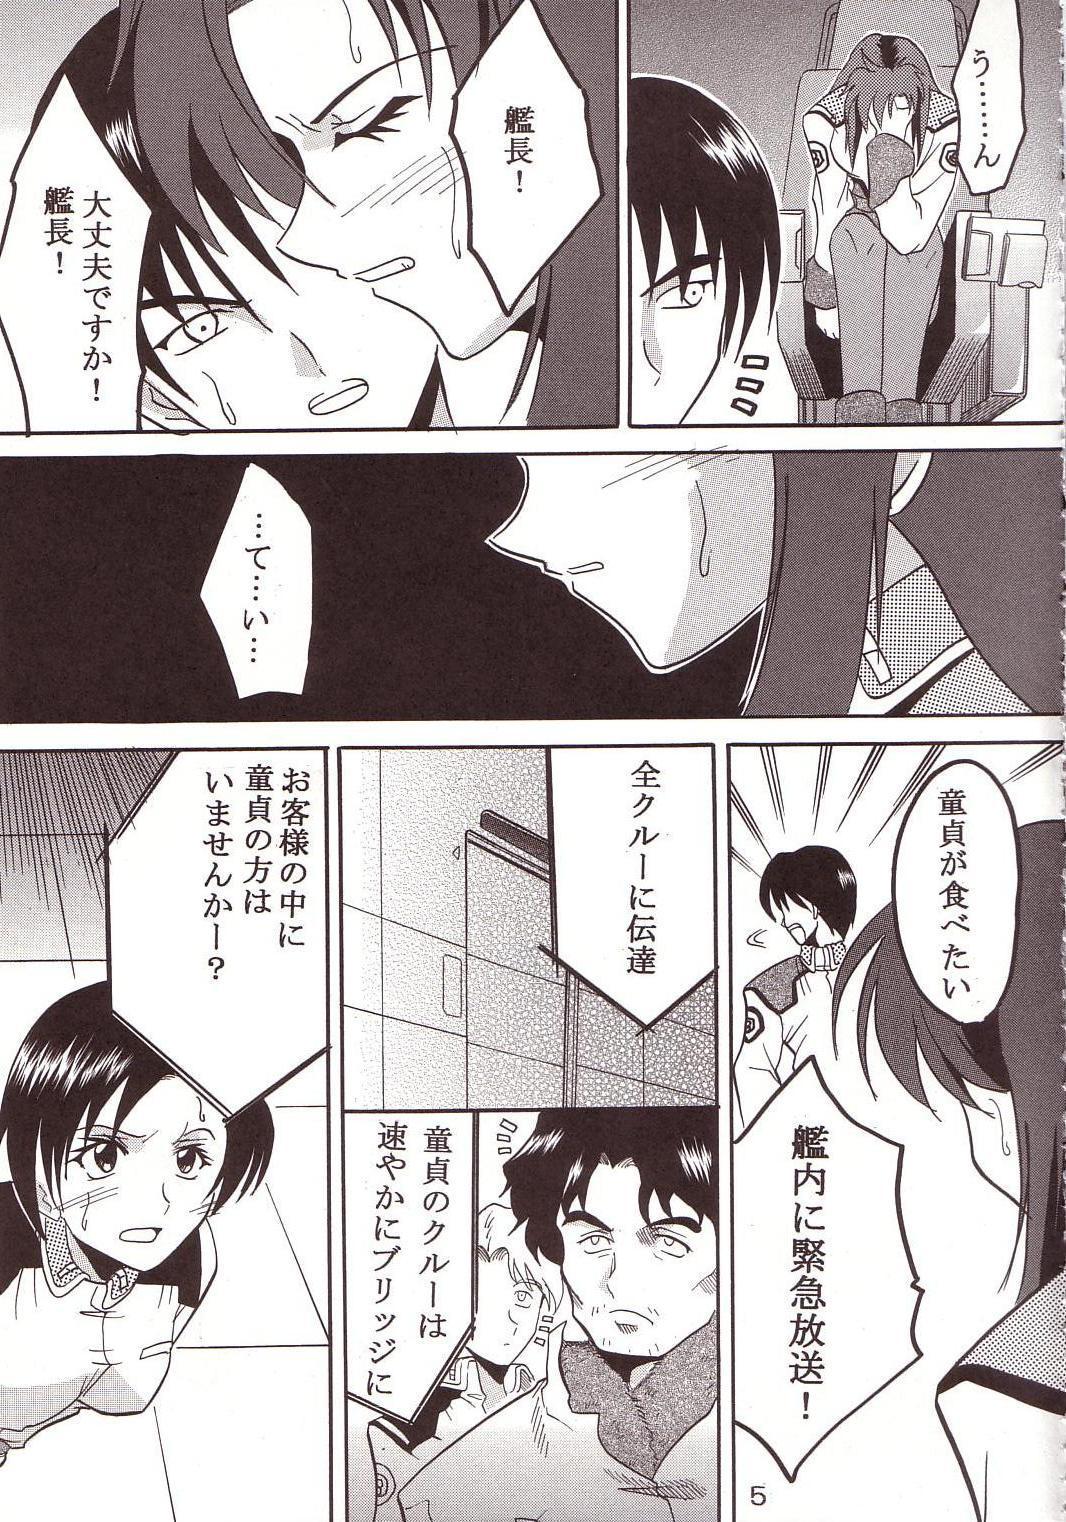 Gayhardcore SEED 3 - Gundam seed Scandal - Page 6